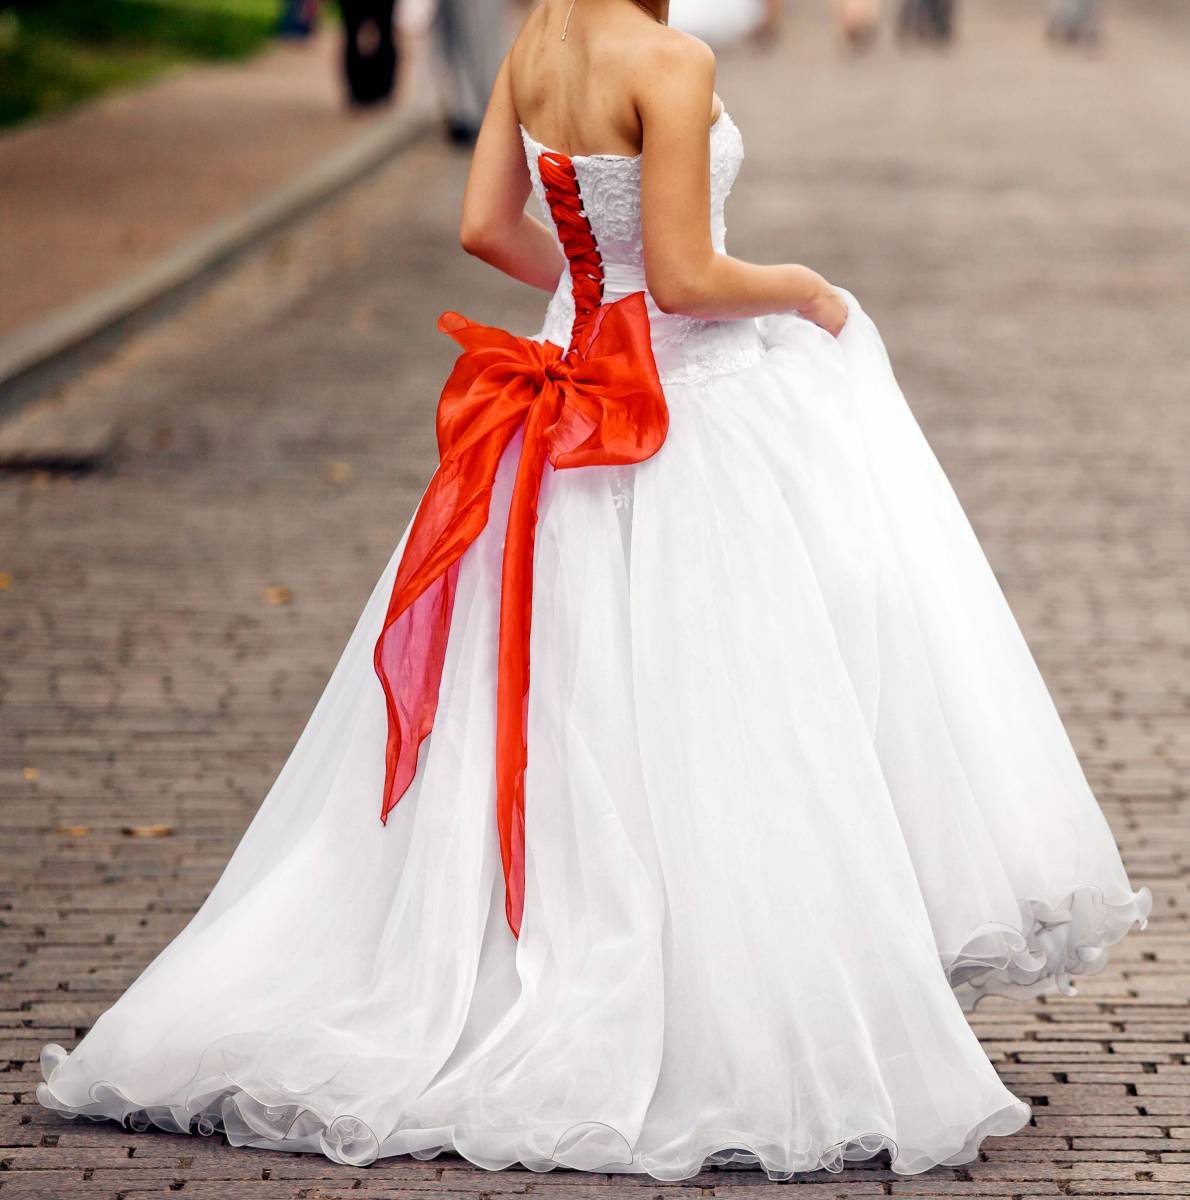 Роль и значение красной ленты на свадебном платье у мусульман